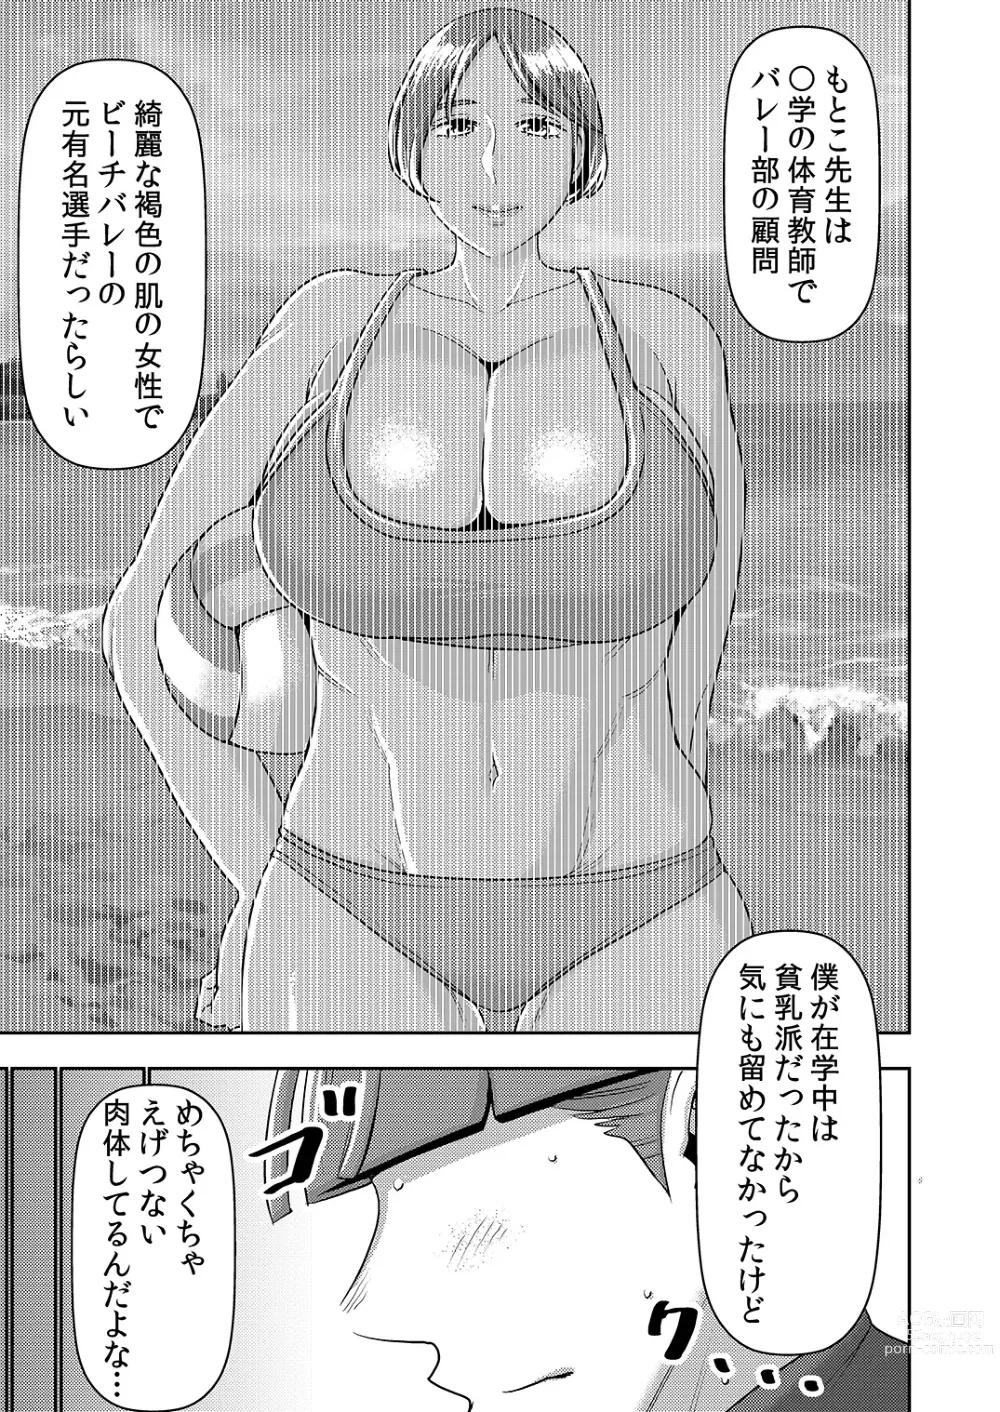 Page 4 of doujinshi Dekakute Eroi Boku no Imouto 5